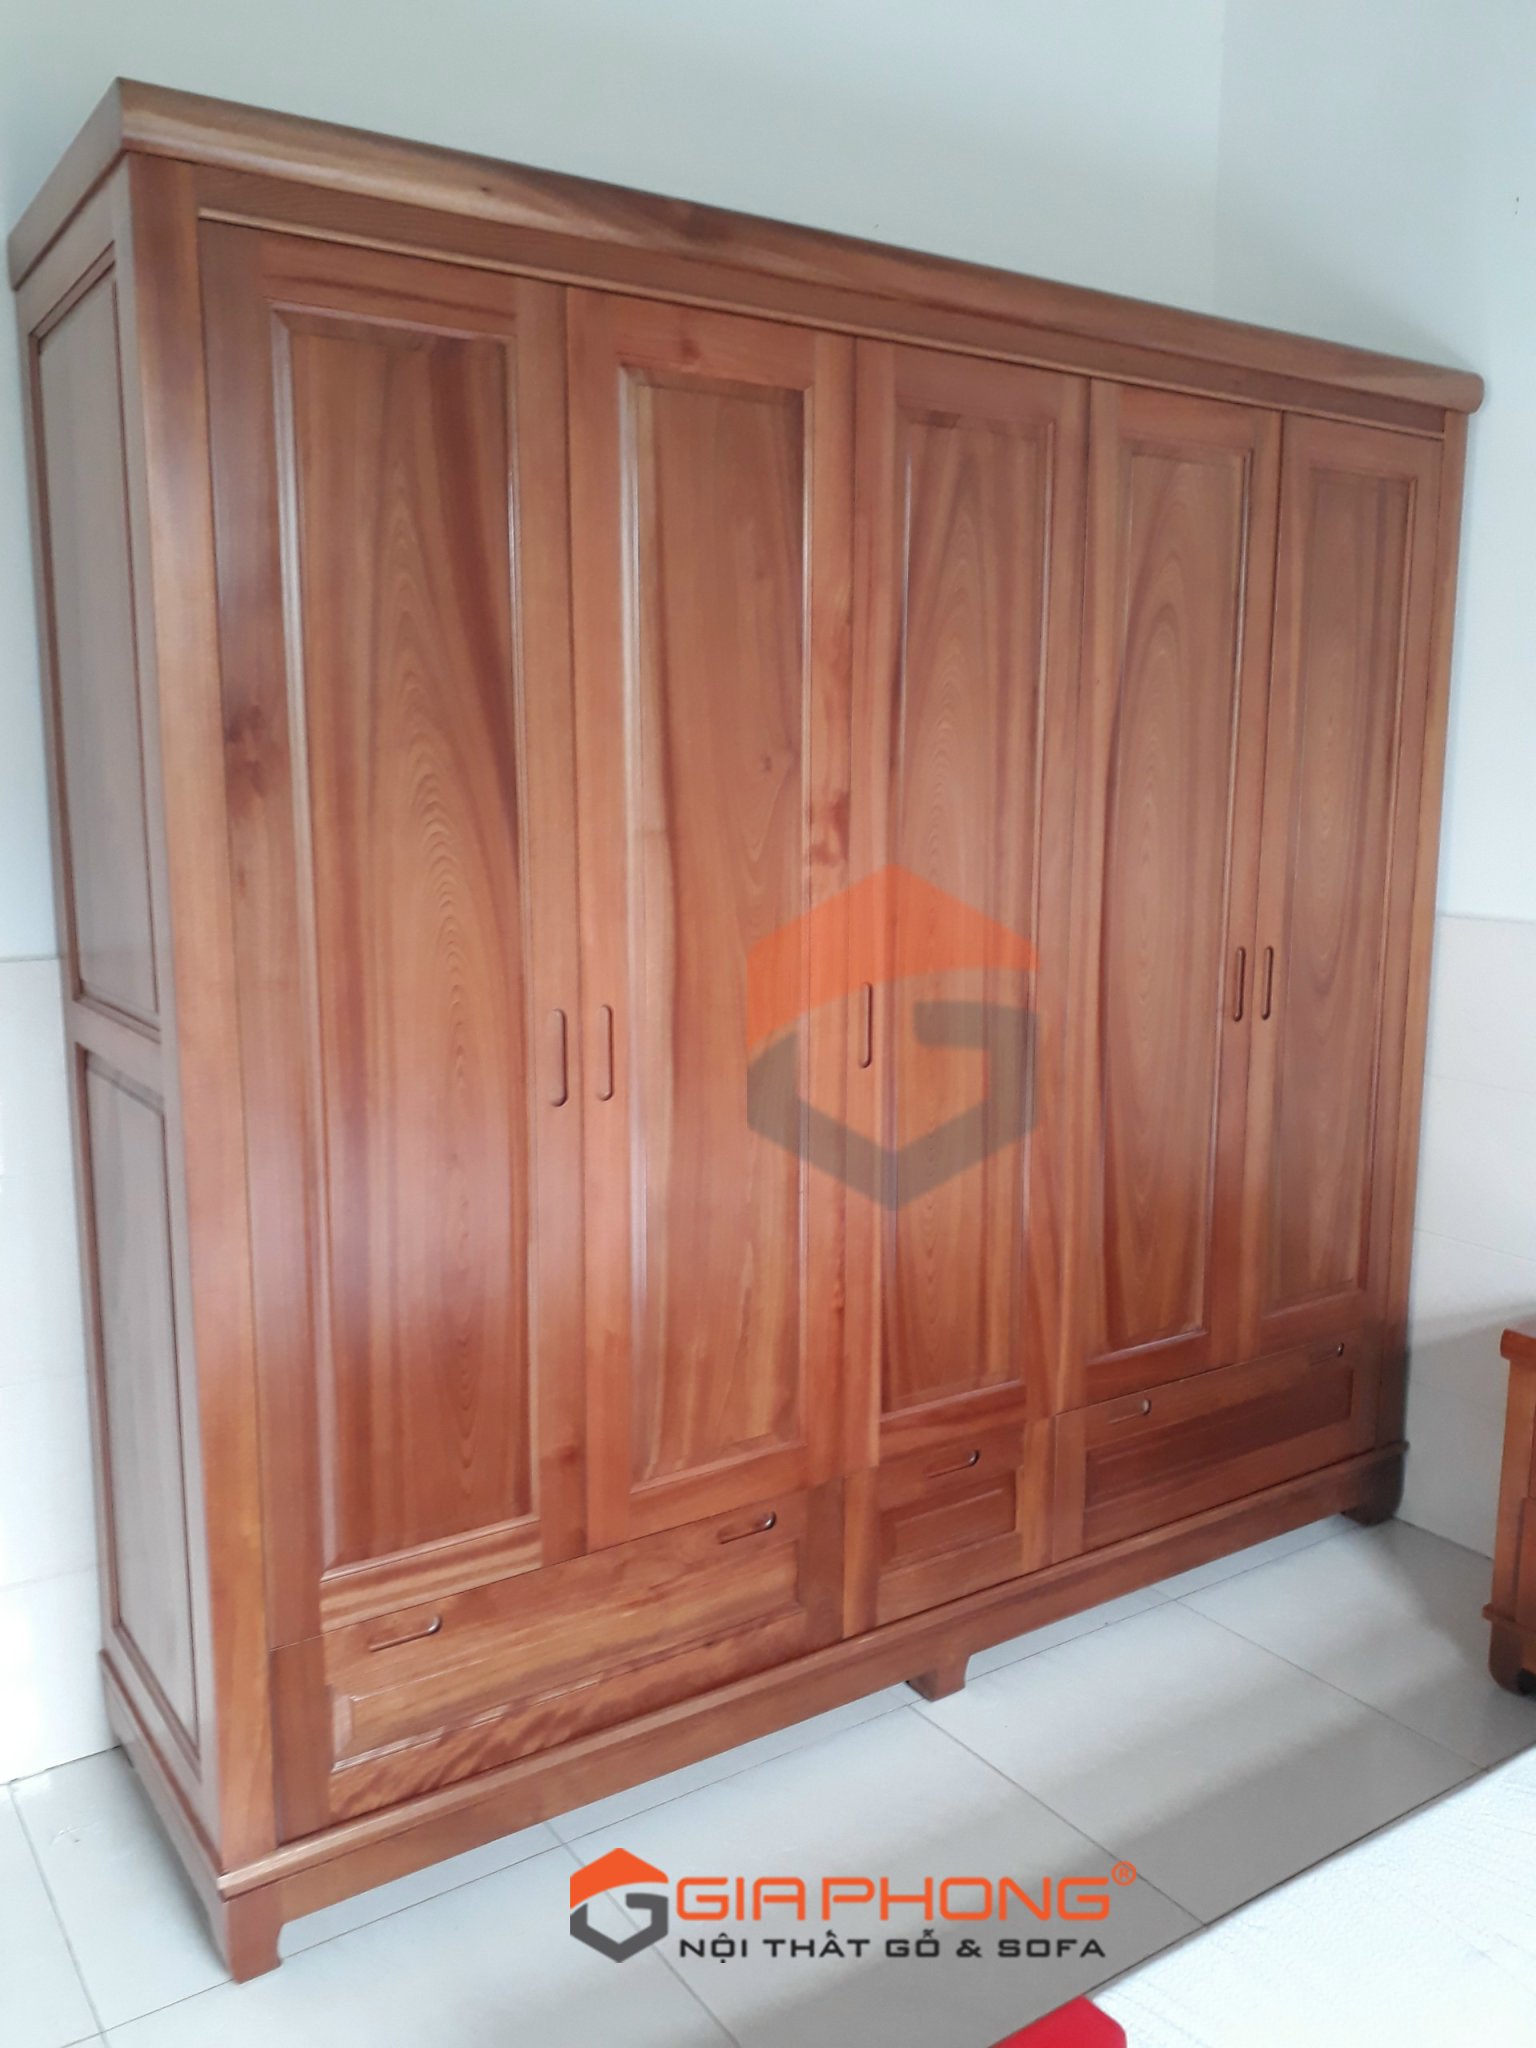 Tủ Gỗ Xoan Đào mang đến sự ấn tượng và tinh tế cho không gian phòng khách của bạn. Với chất liệu gỗ tự nhiên cao cấp và thiết kế độc đáo, bạn sẽ không thể chối từ chiếc tủ này. Bấm vào hình ảnh để khám phá thêm.